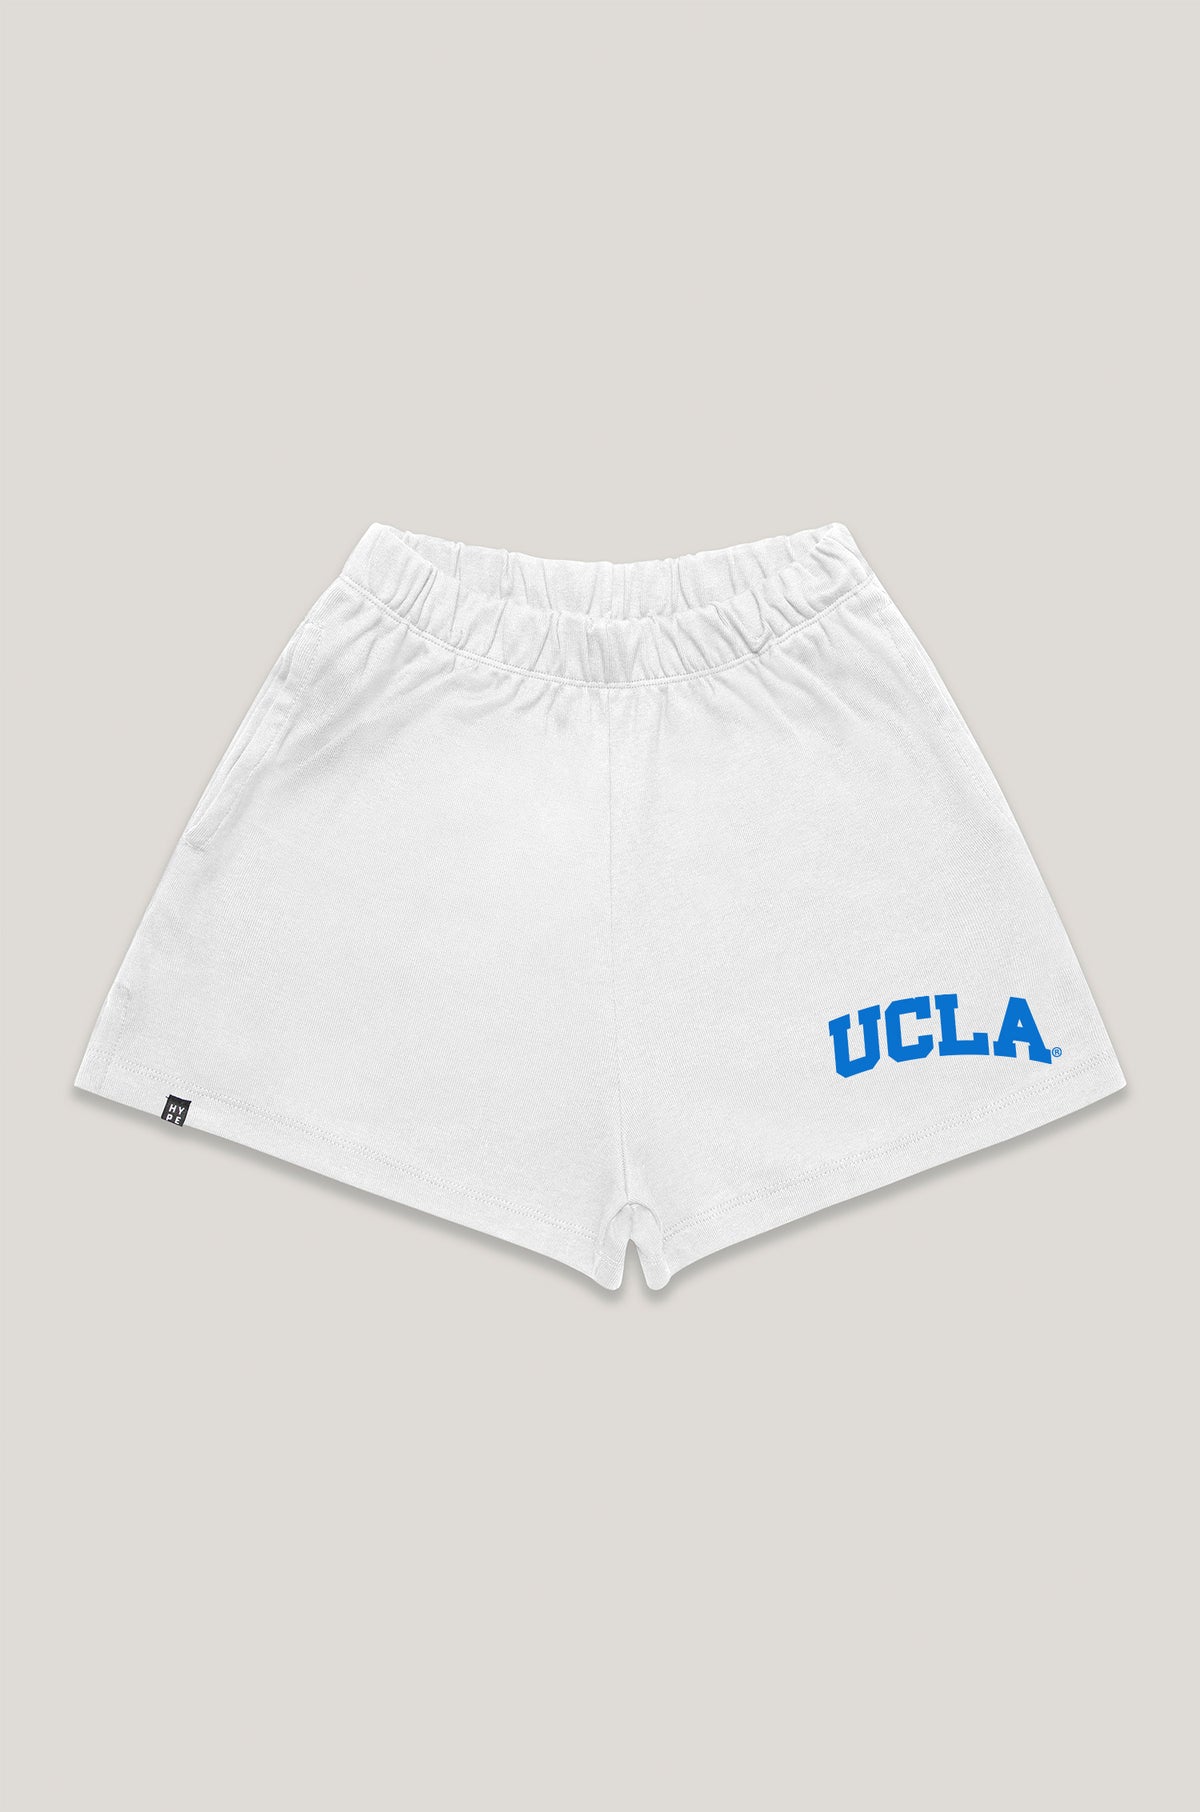 UCLA Track Shorts